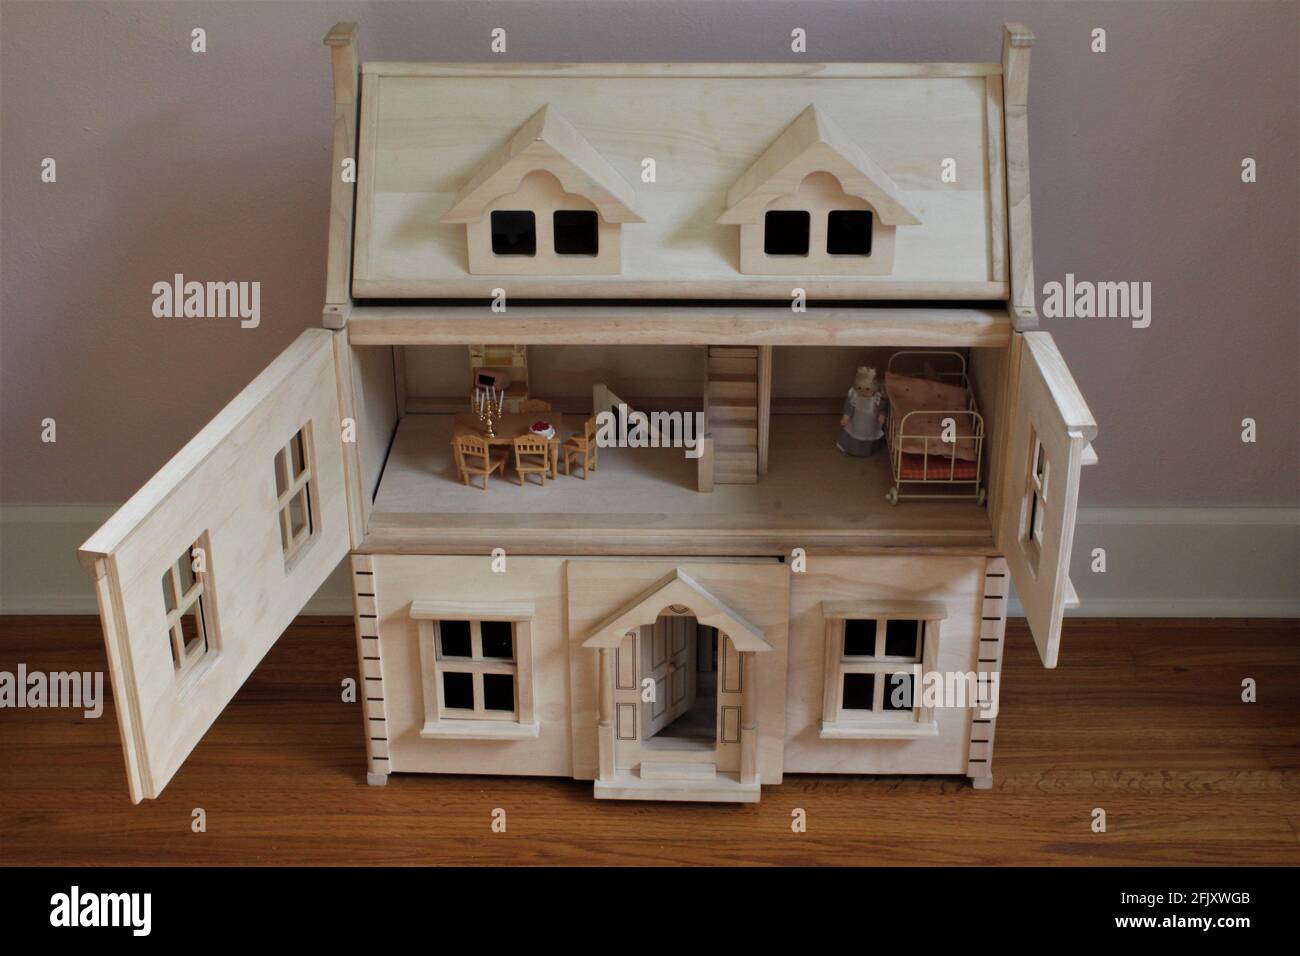 Une maison de poupée en bois de bricolage dans la chambre d'un enfant pour faire semblant. Les portes sont ouvertes au deuxième étage et la salle de poupées est montrée avec des meubles miniatures Banque D'Images